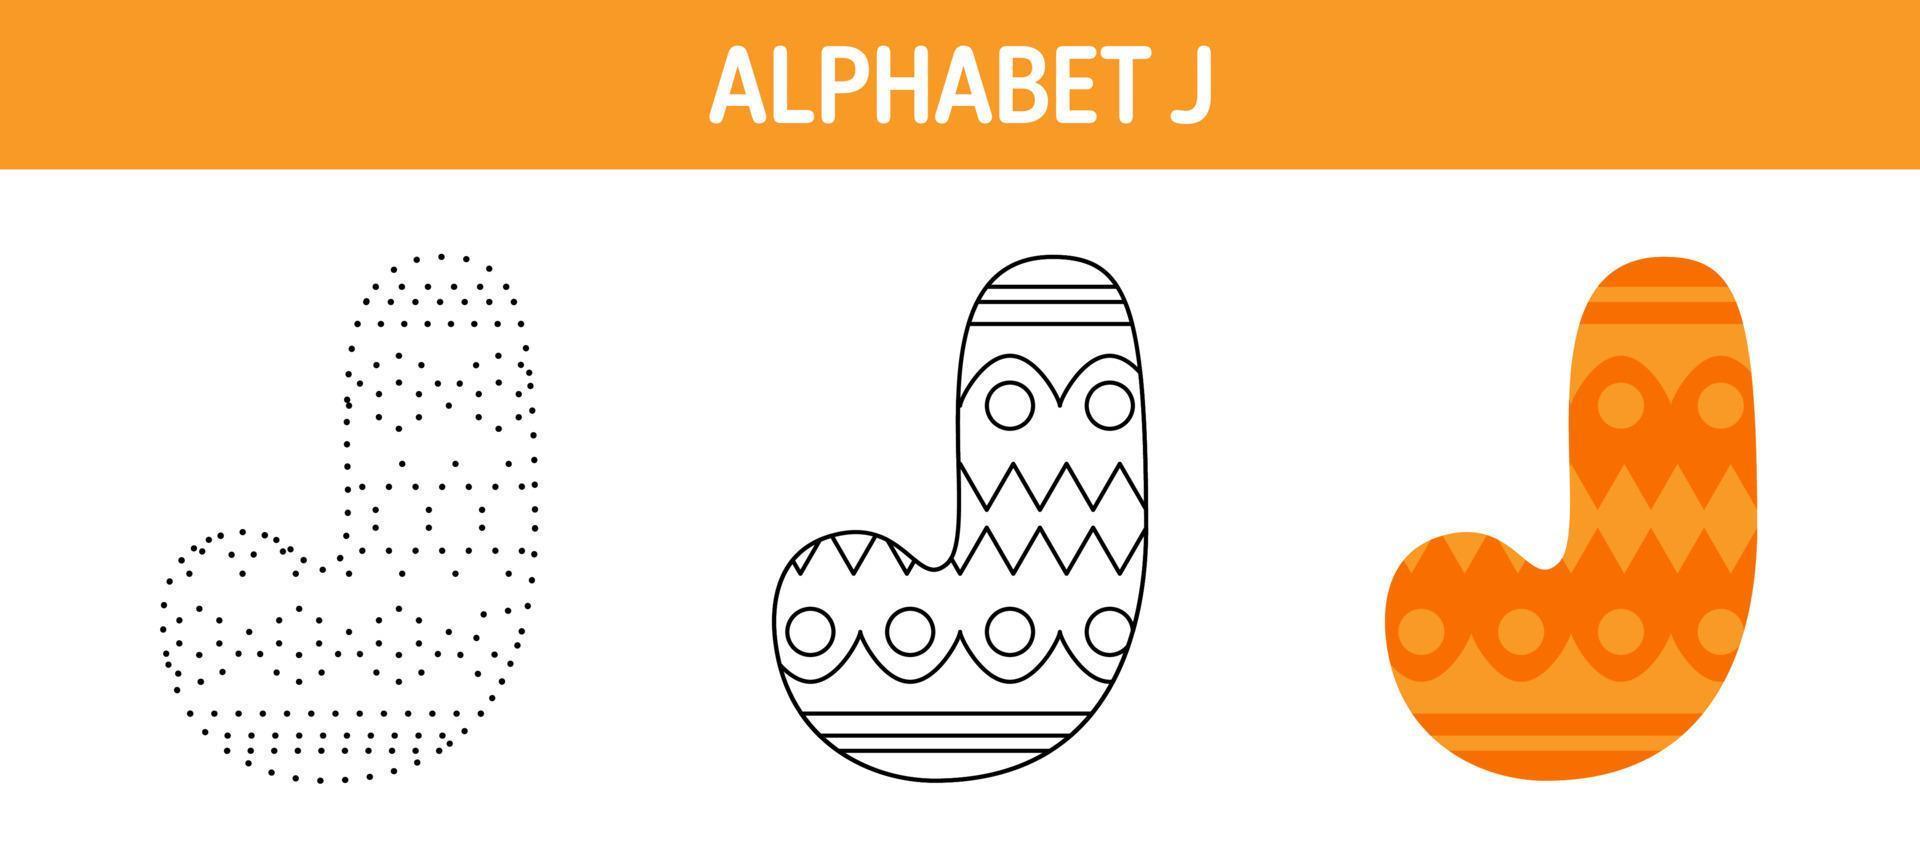 alfabeto j tracciato e colorazione foglio di lavoro per bambini vettore